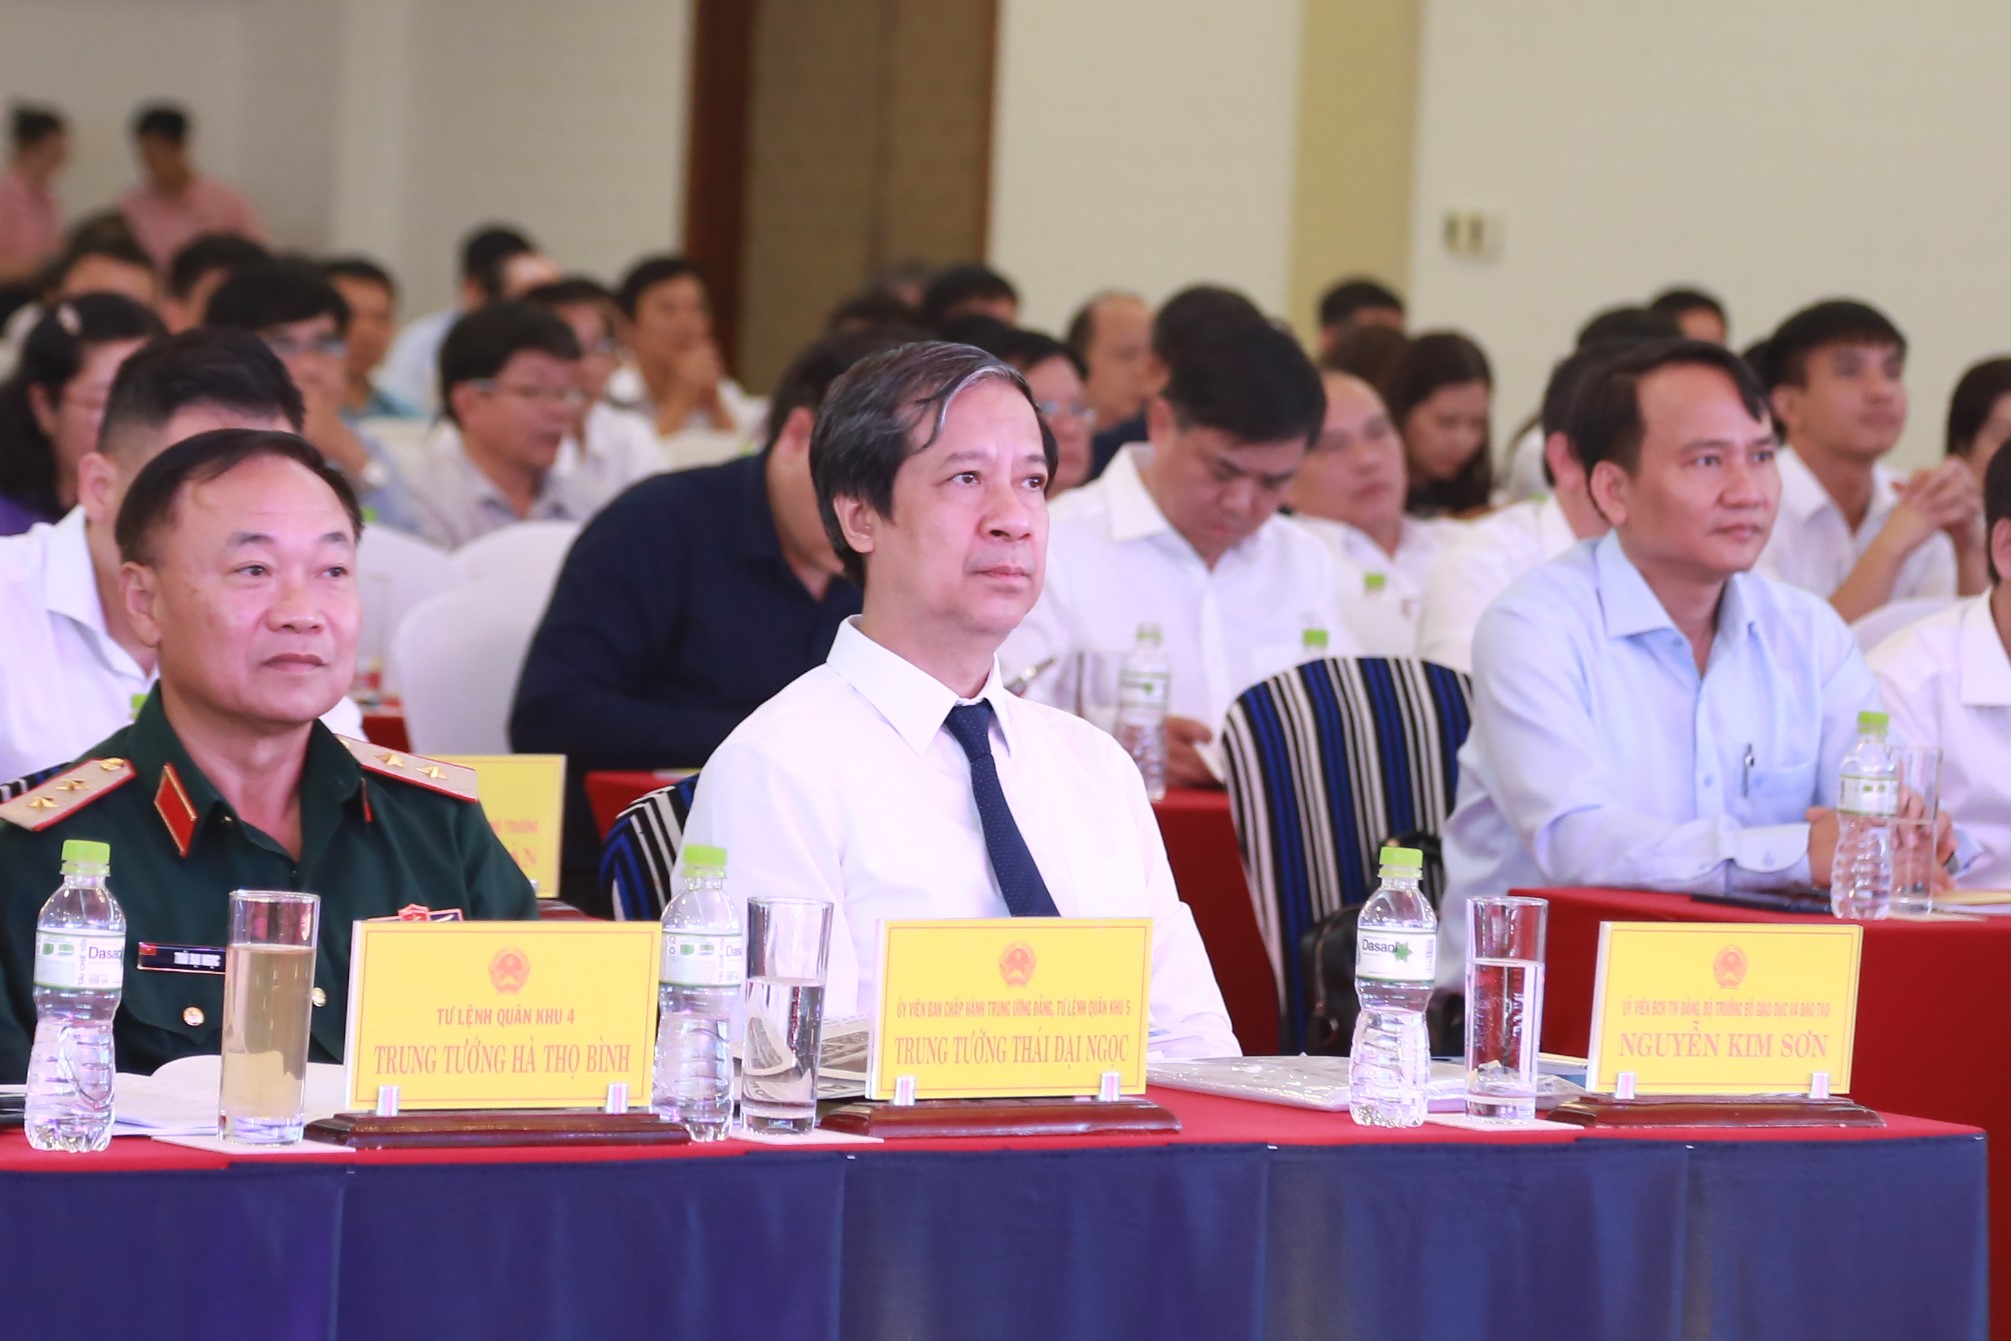 Bộ trưởng Bộ GD&ĐT Nguyễn Kim Sơn dự Hội nghị phát triển giáo dục và đào tạo vùng Bắc Trung bộ và Duyên hải miền Trung đến năm 2030, tầm nhìn đến năm 2045 tại Quảng Trị.